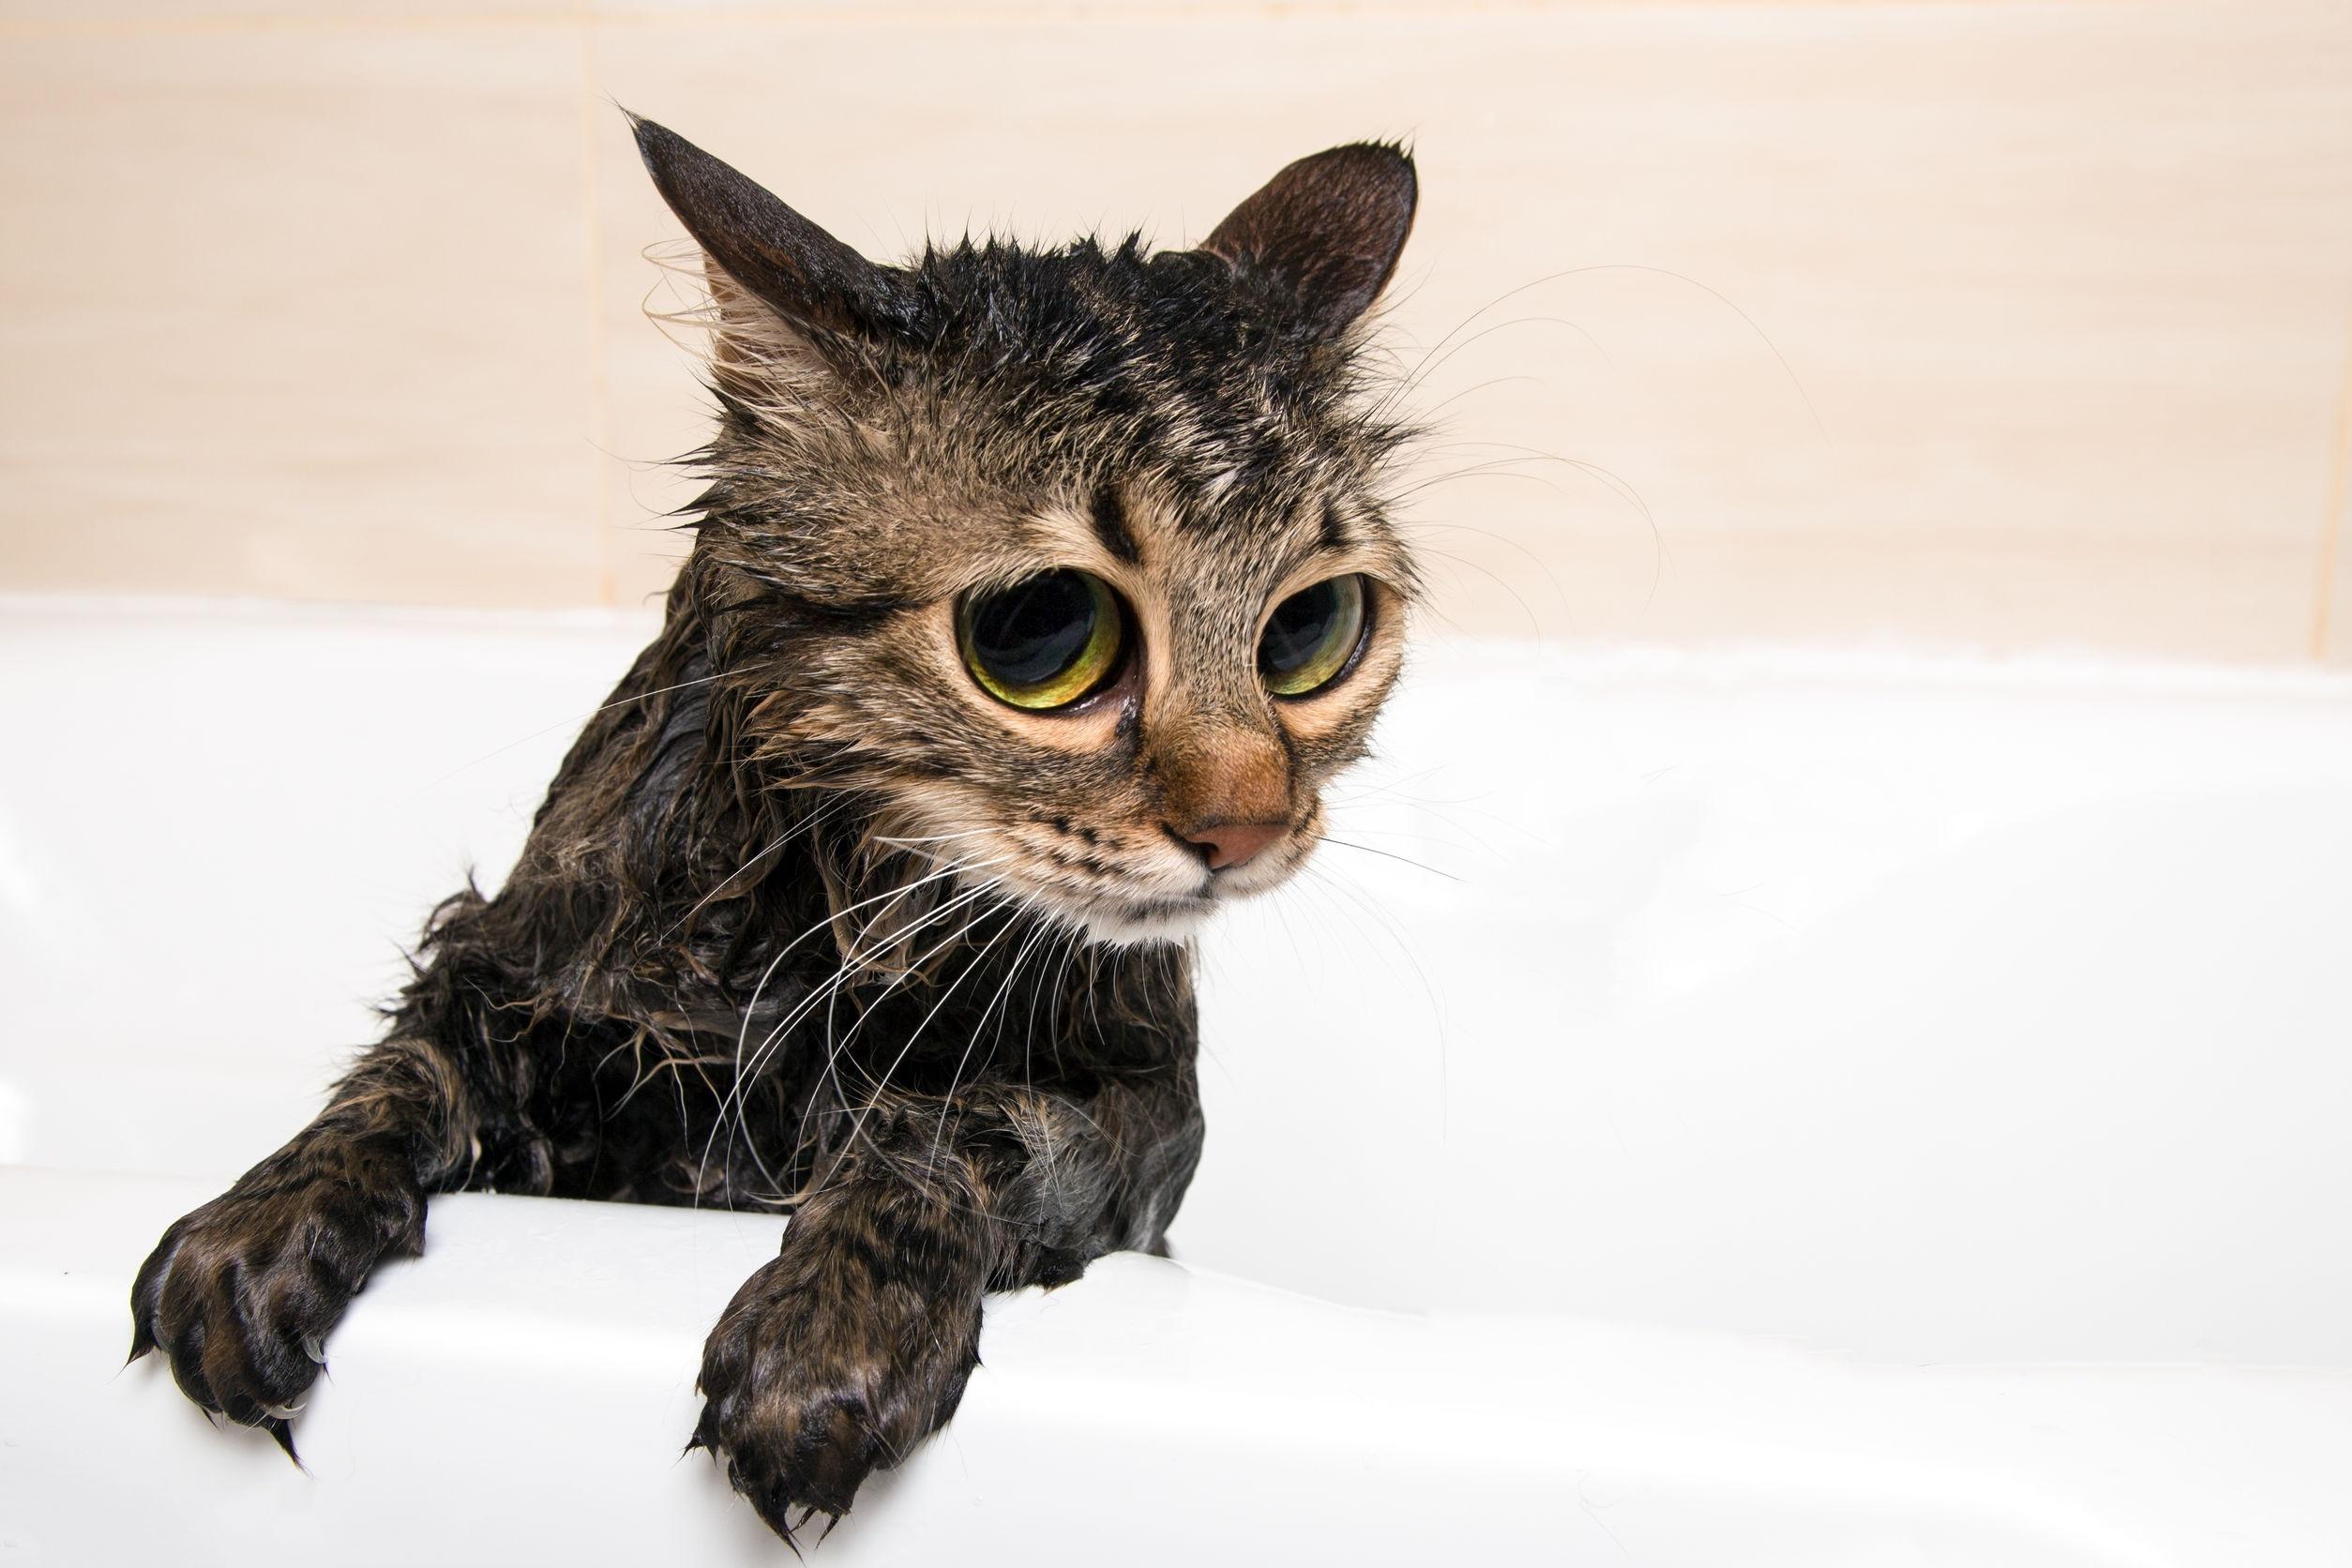 Perché i gatti hanno paura dell'acqua?